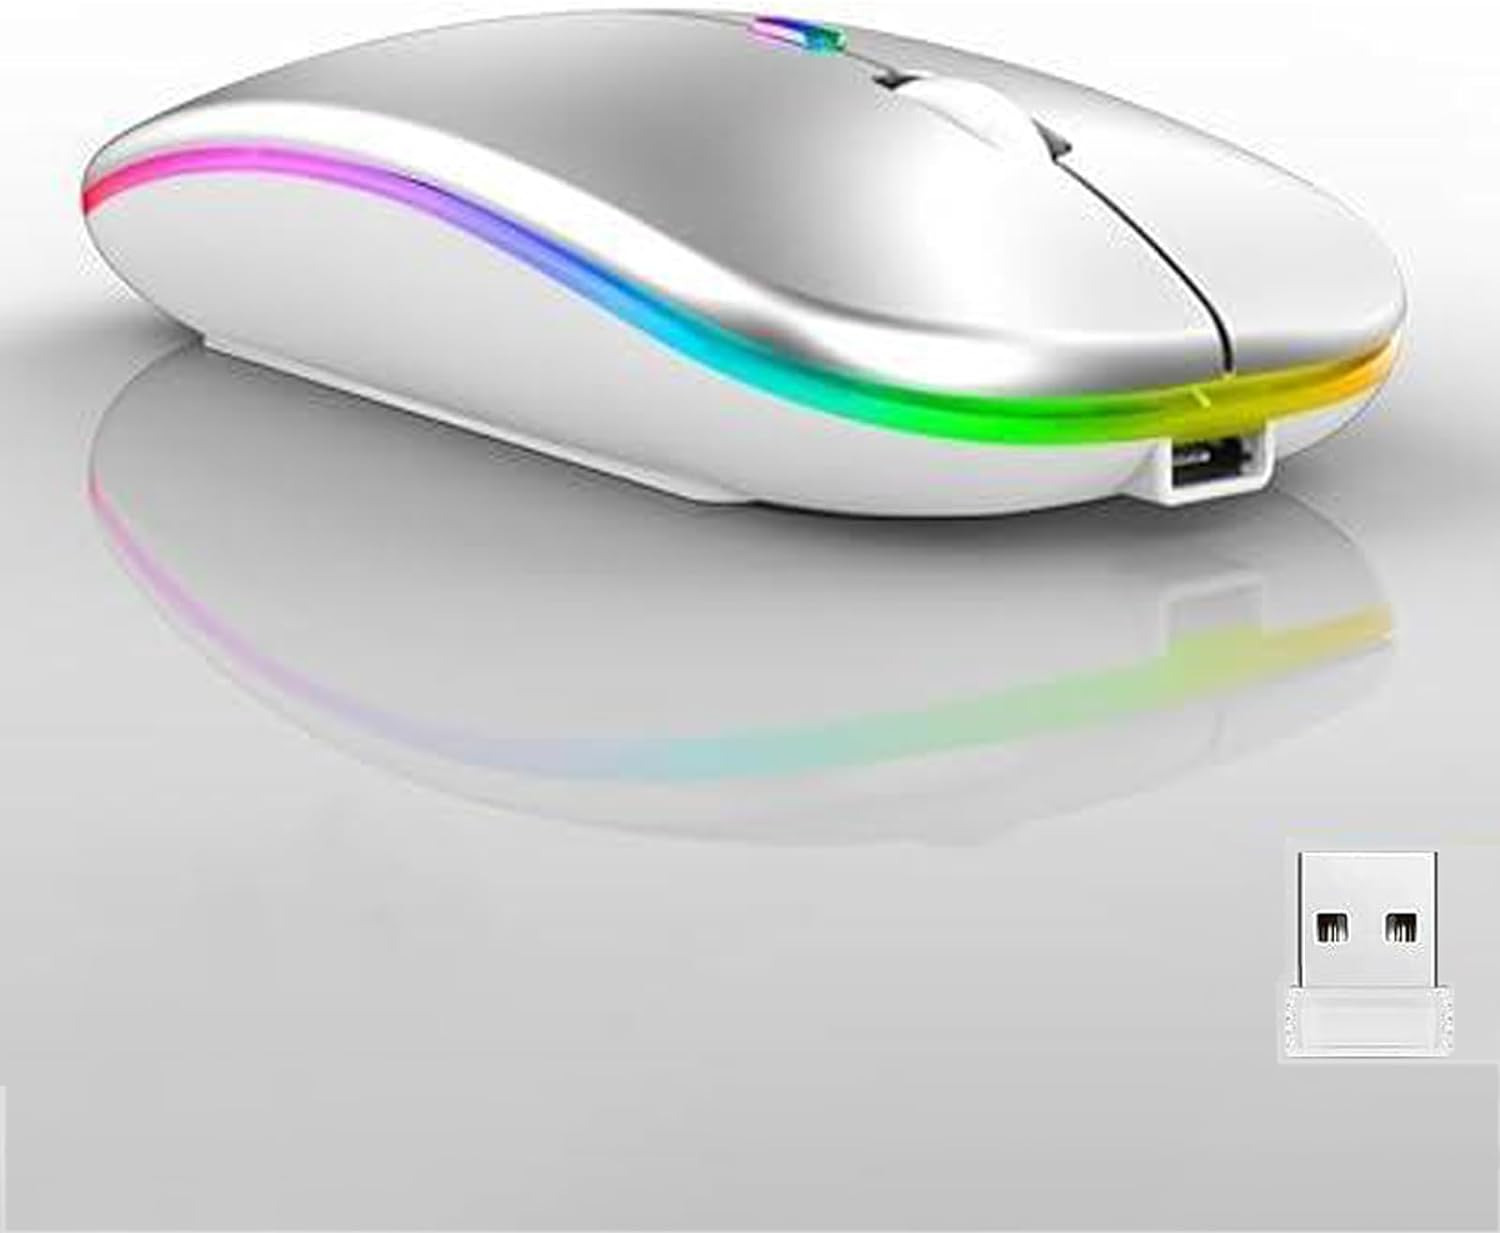 Raton inalambrico recargable de para pc laptop computadora Blanco mouse